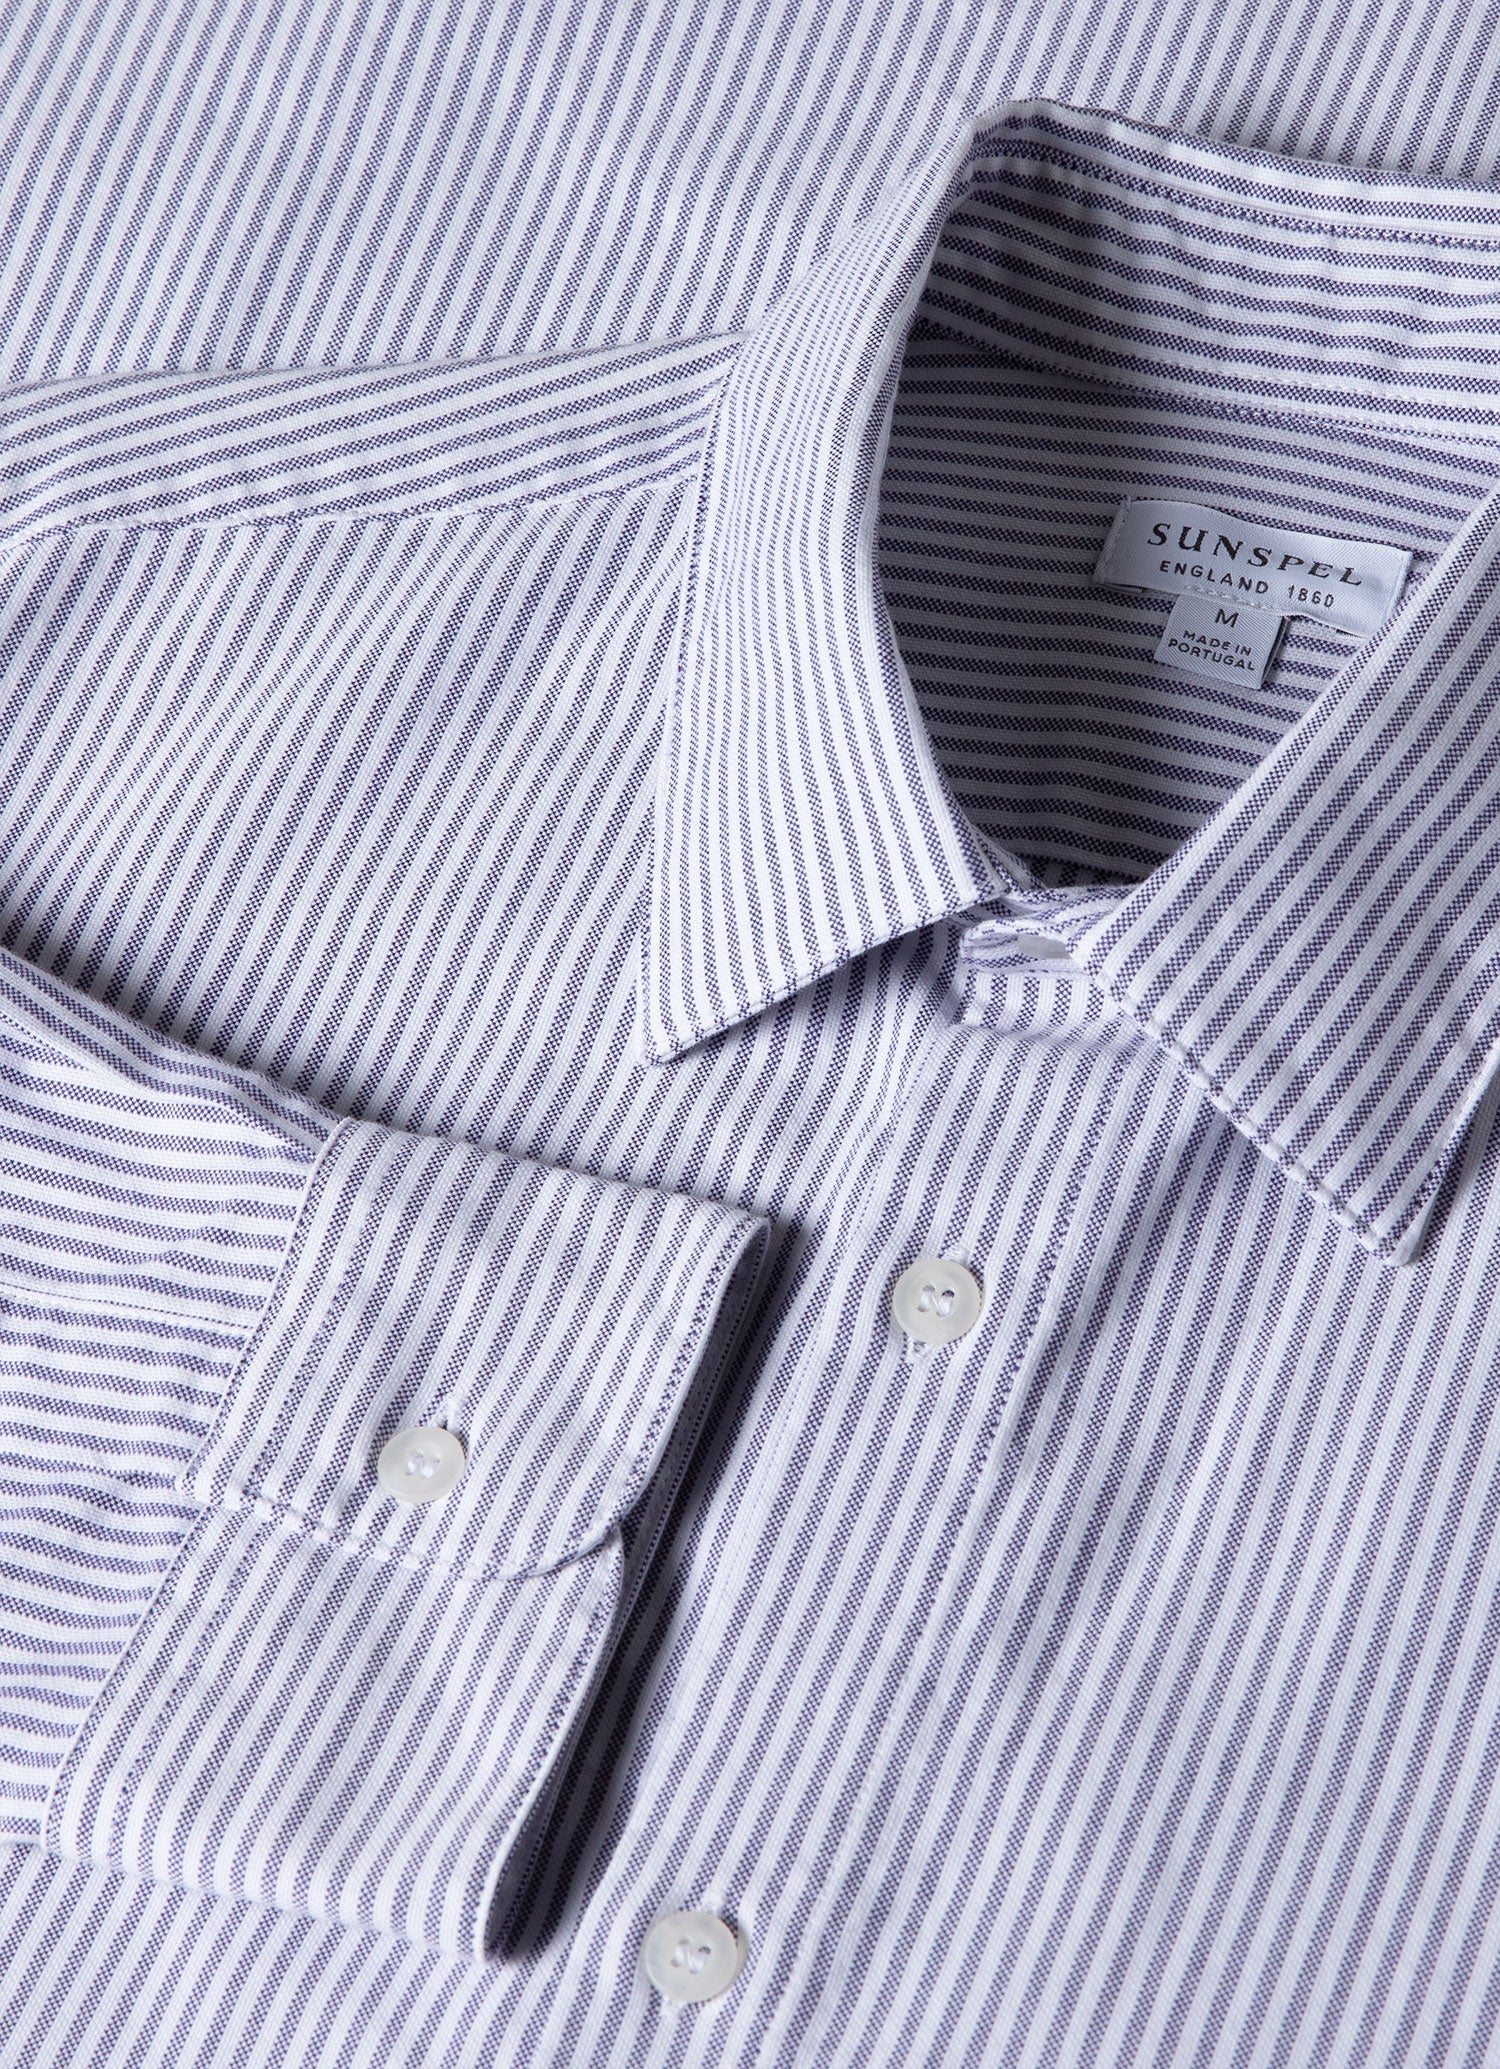 オックスフォードストライプシャツ （White/Navy Oxford Stripe）| Sunspel